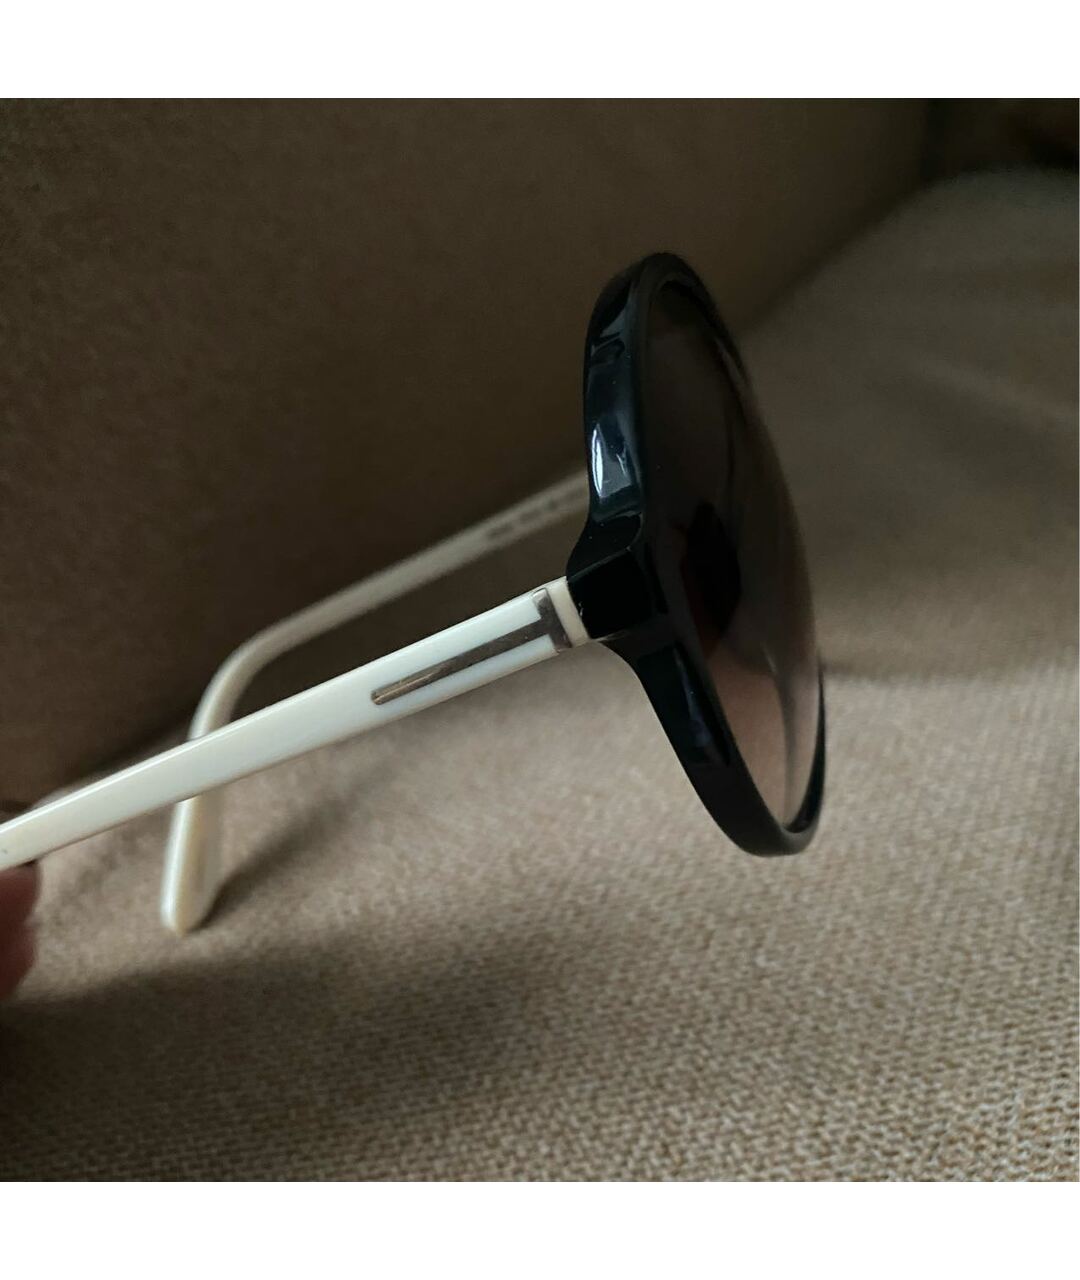 TOM FORD Коричневые пластиковые солнцезащитные очки, фото 3